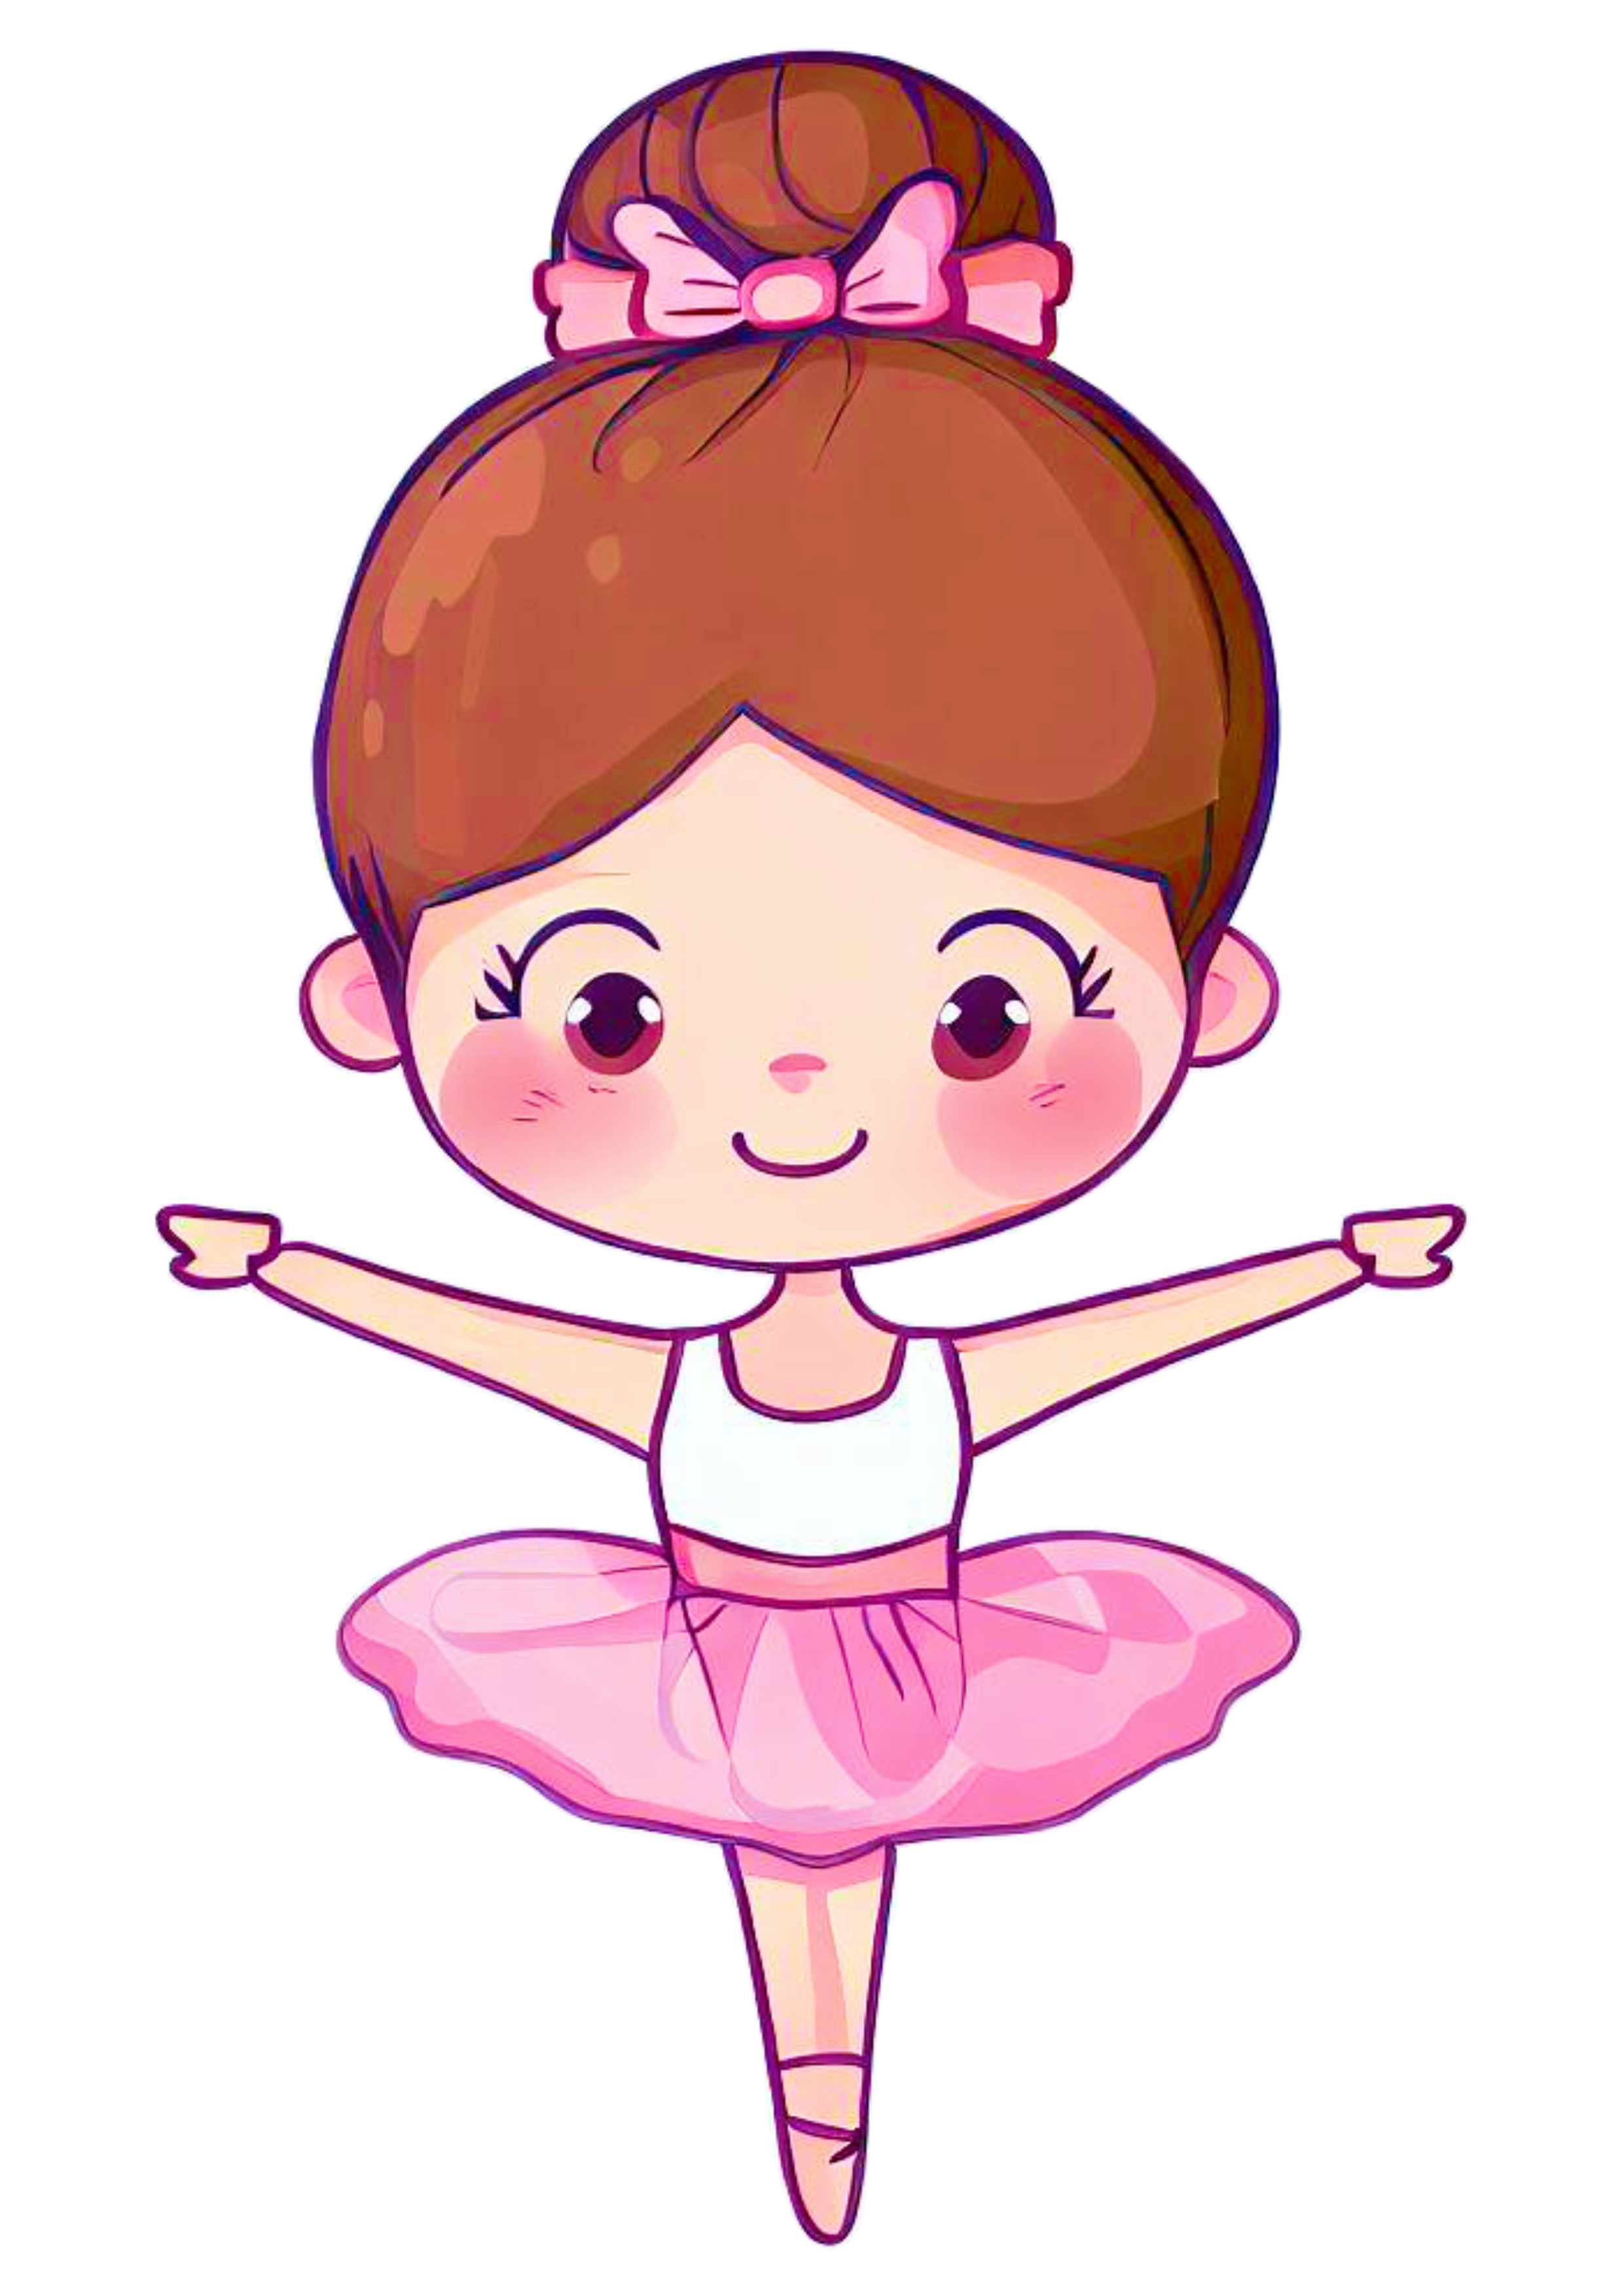 Bailarina bonequinha ilustração passos de balé vestido fashion desenho com traços simples imagem sem fundo png